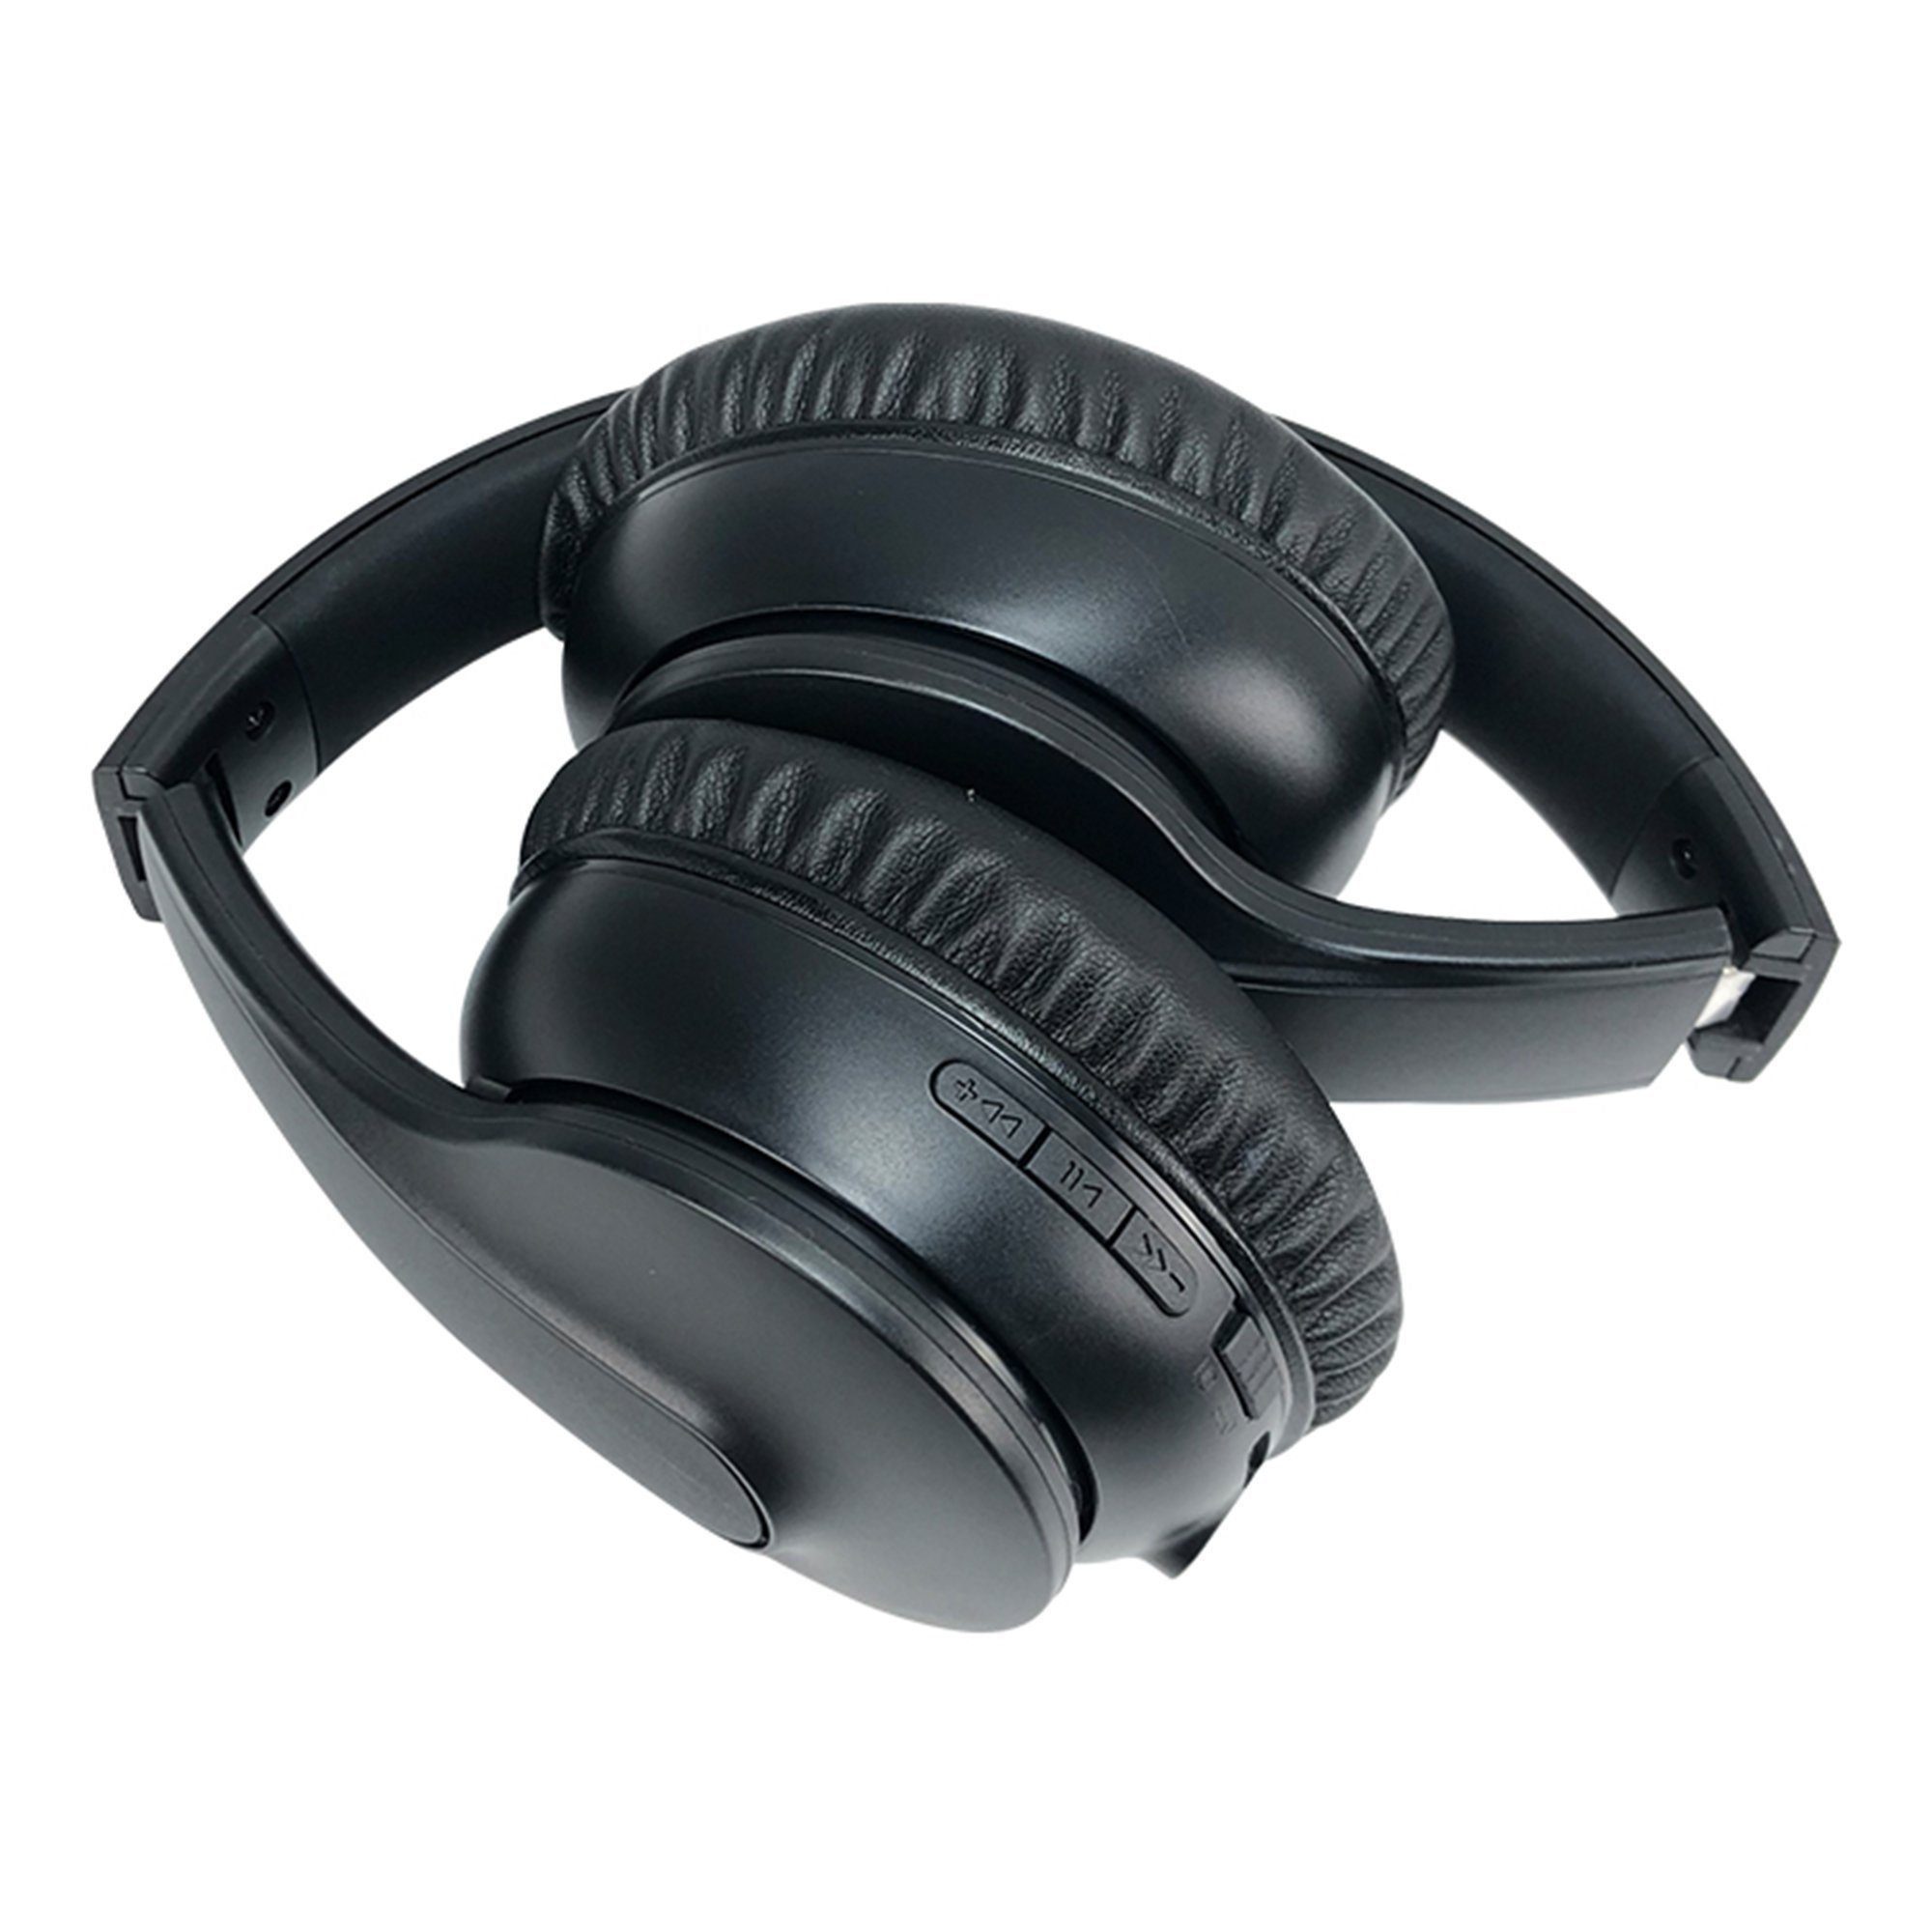 Ear Bluetooth Over-Ear-Kopfhörer Bluetooth Extra Kopfhörer,Over Schwarz (luetooth mattiert Kabellos Mutoy Kopfhörer Kopfhörer) Bass Kopfhörer, 5.3,Noise Cancelling